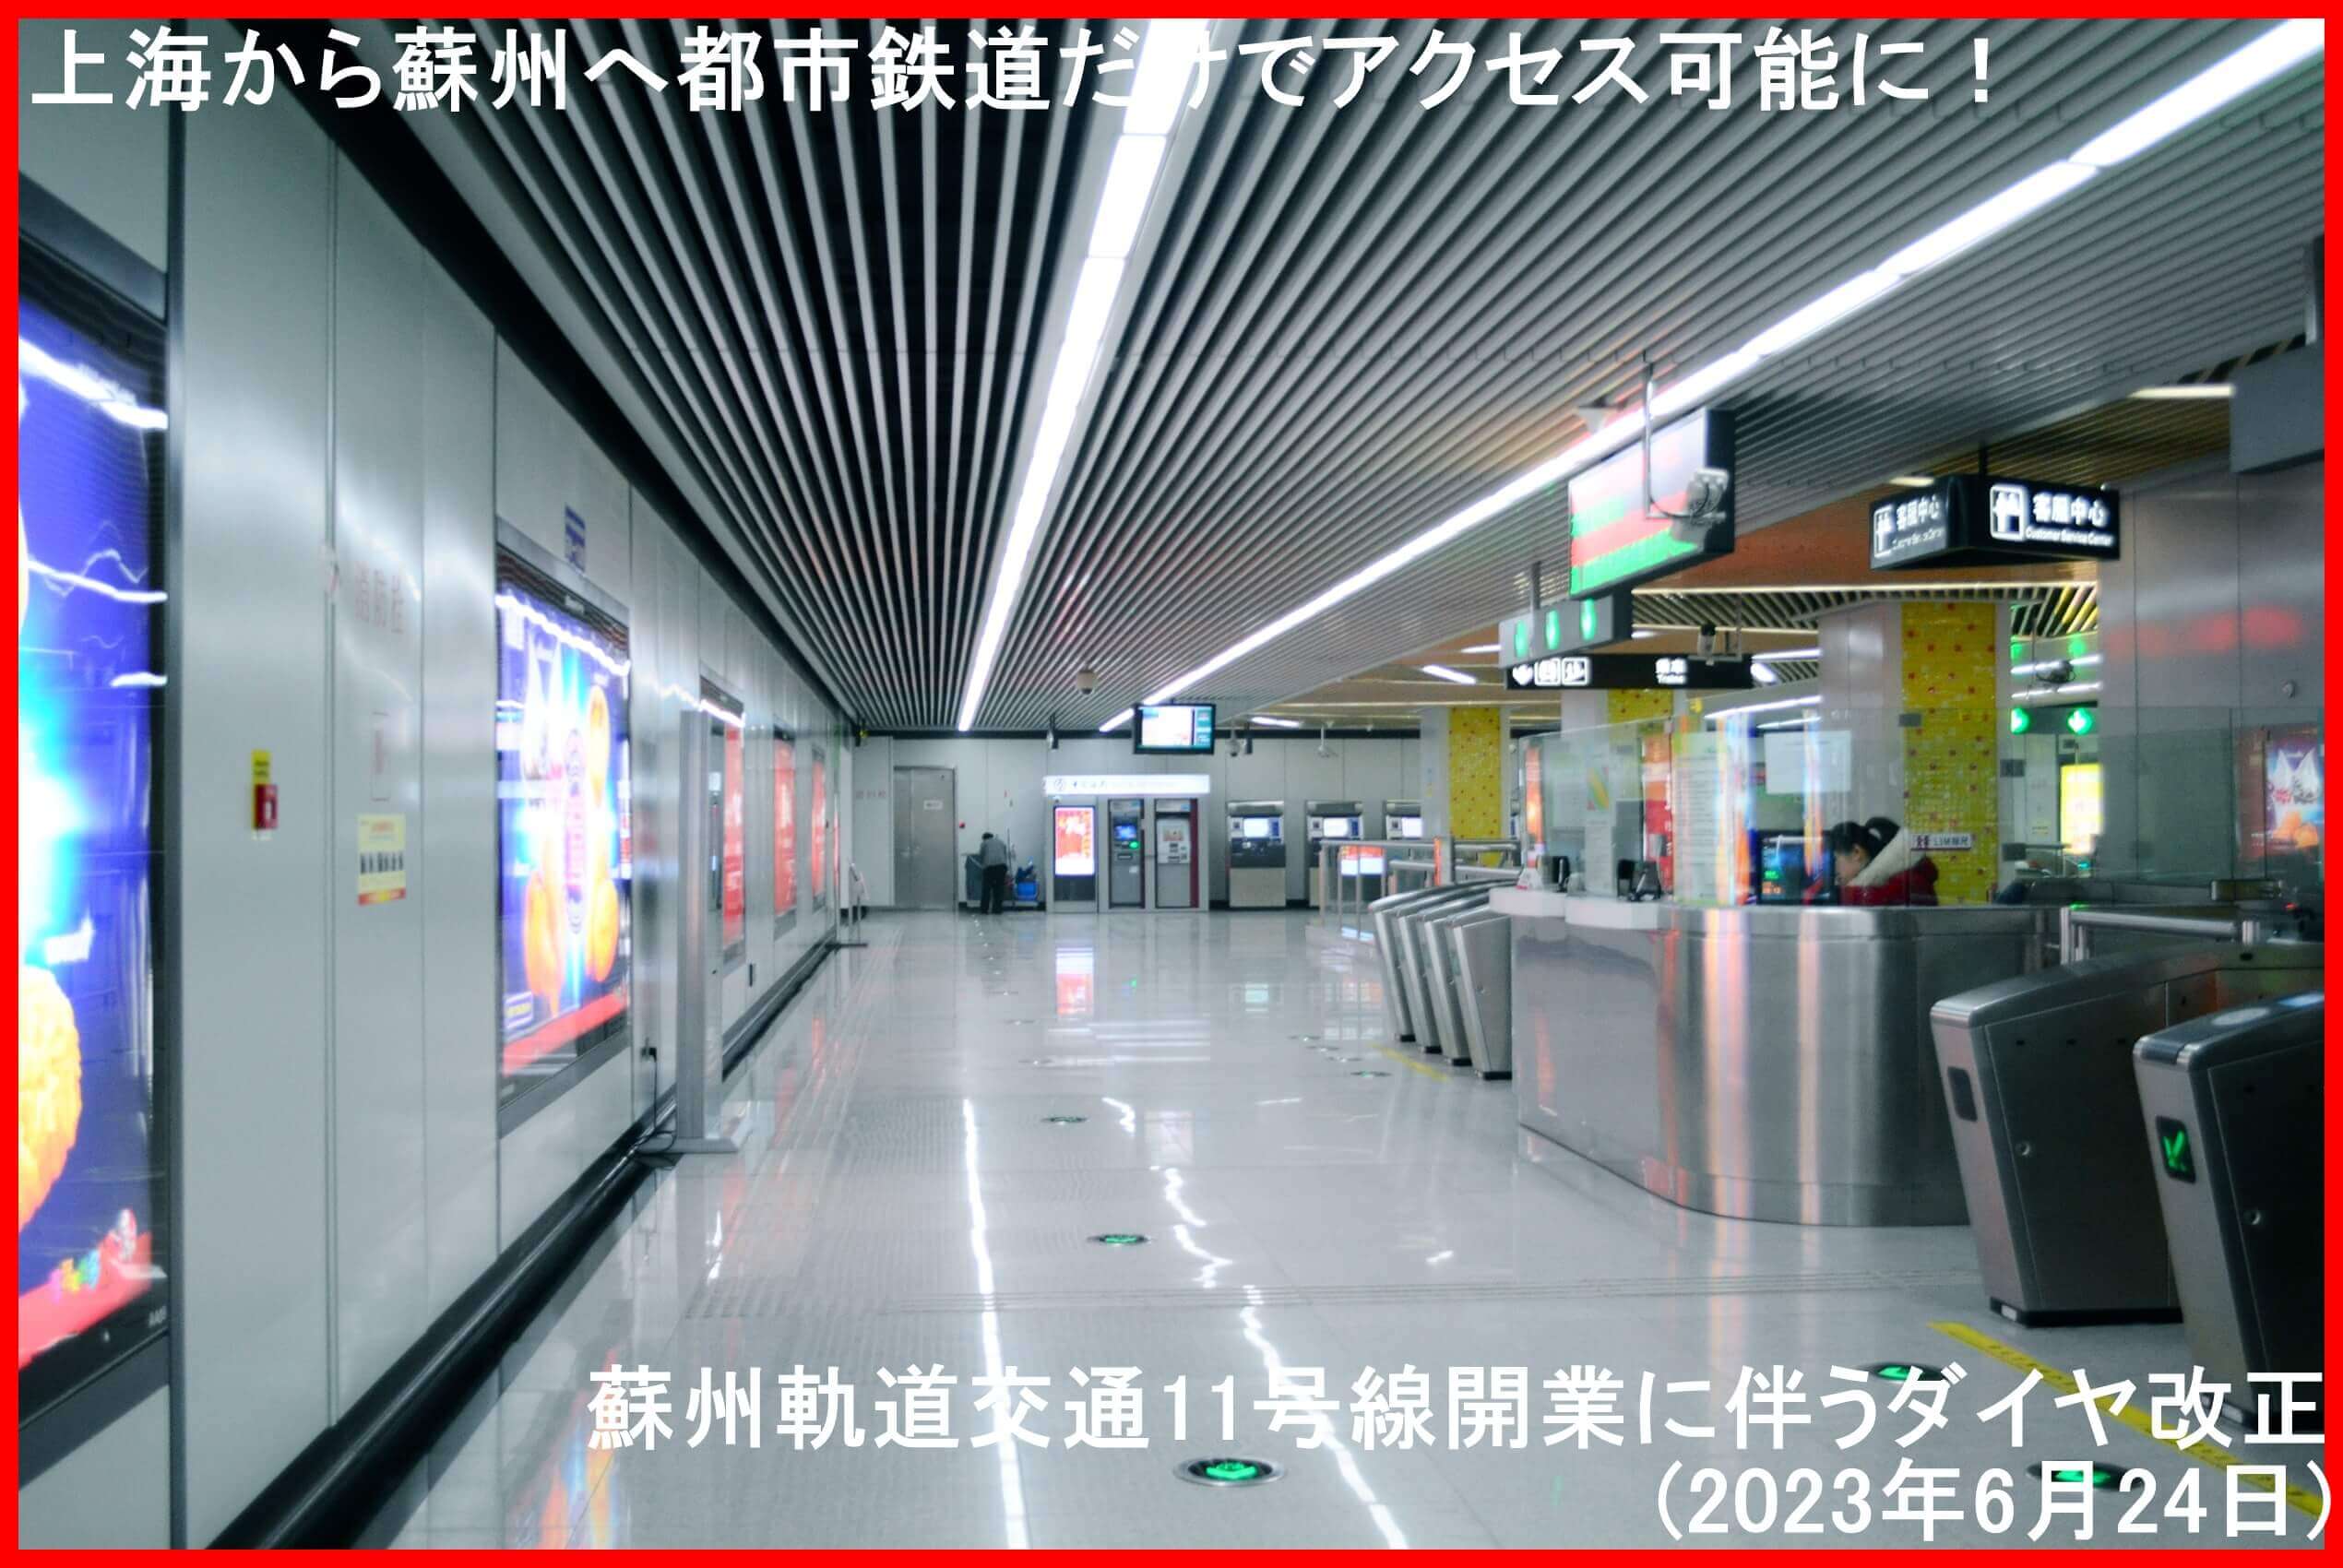 上海から蘇州へ都市鉄道だけでアクセス可能に！　蘇州軌道交通11号線開業に伴うダイヤ改正(2023年6月24日)